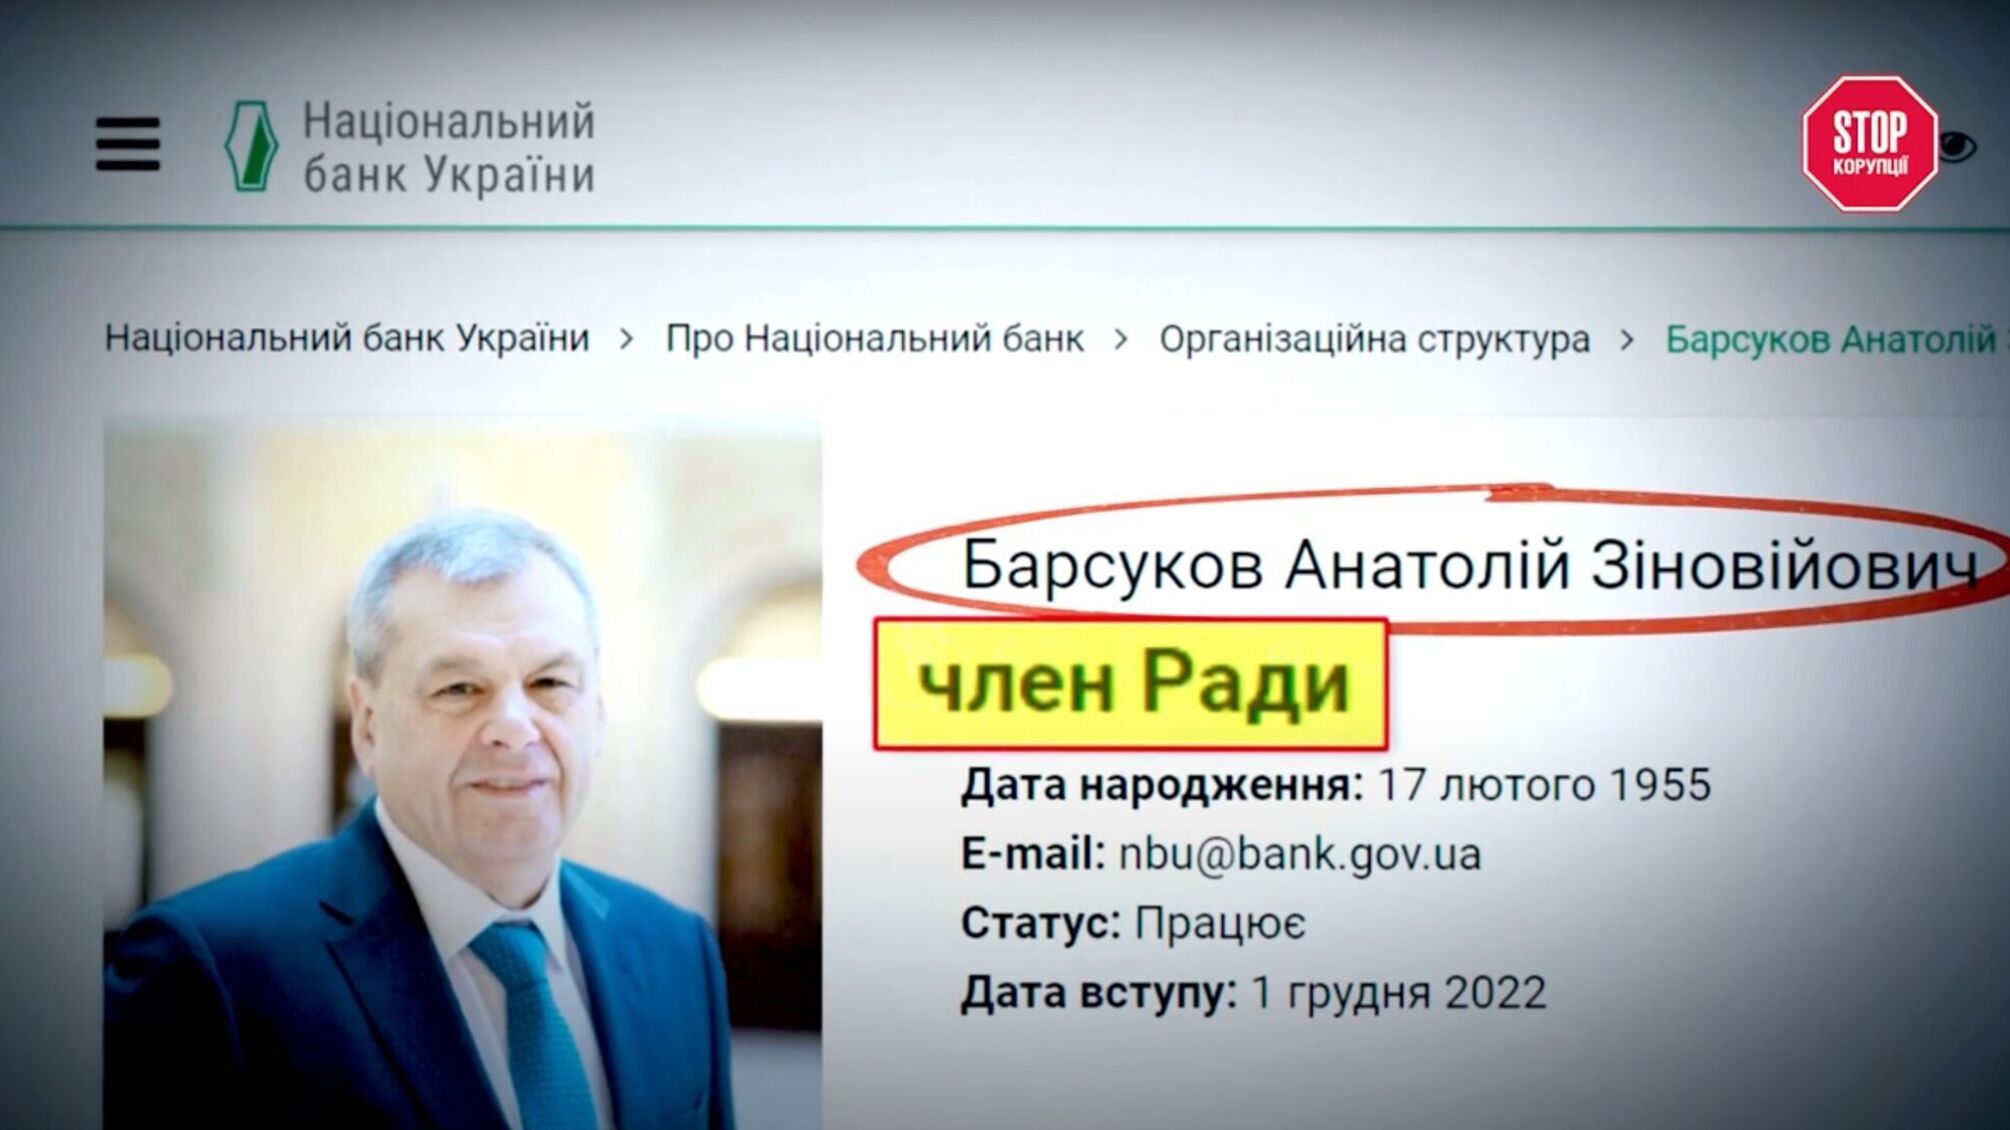 З підозрюваних – у нацбанкіри: як фігурант справи про 15 млн Барсуков став членом Ради НБУ?